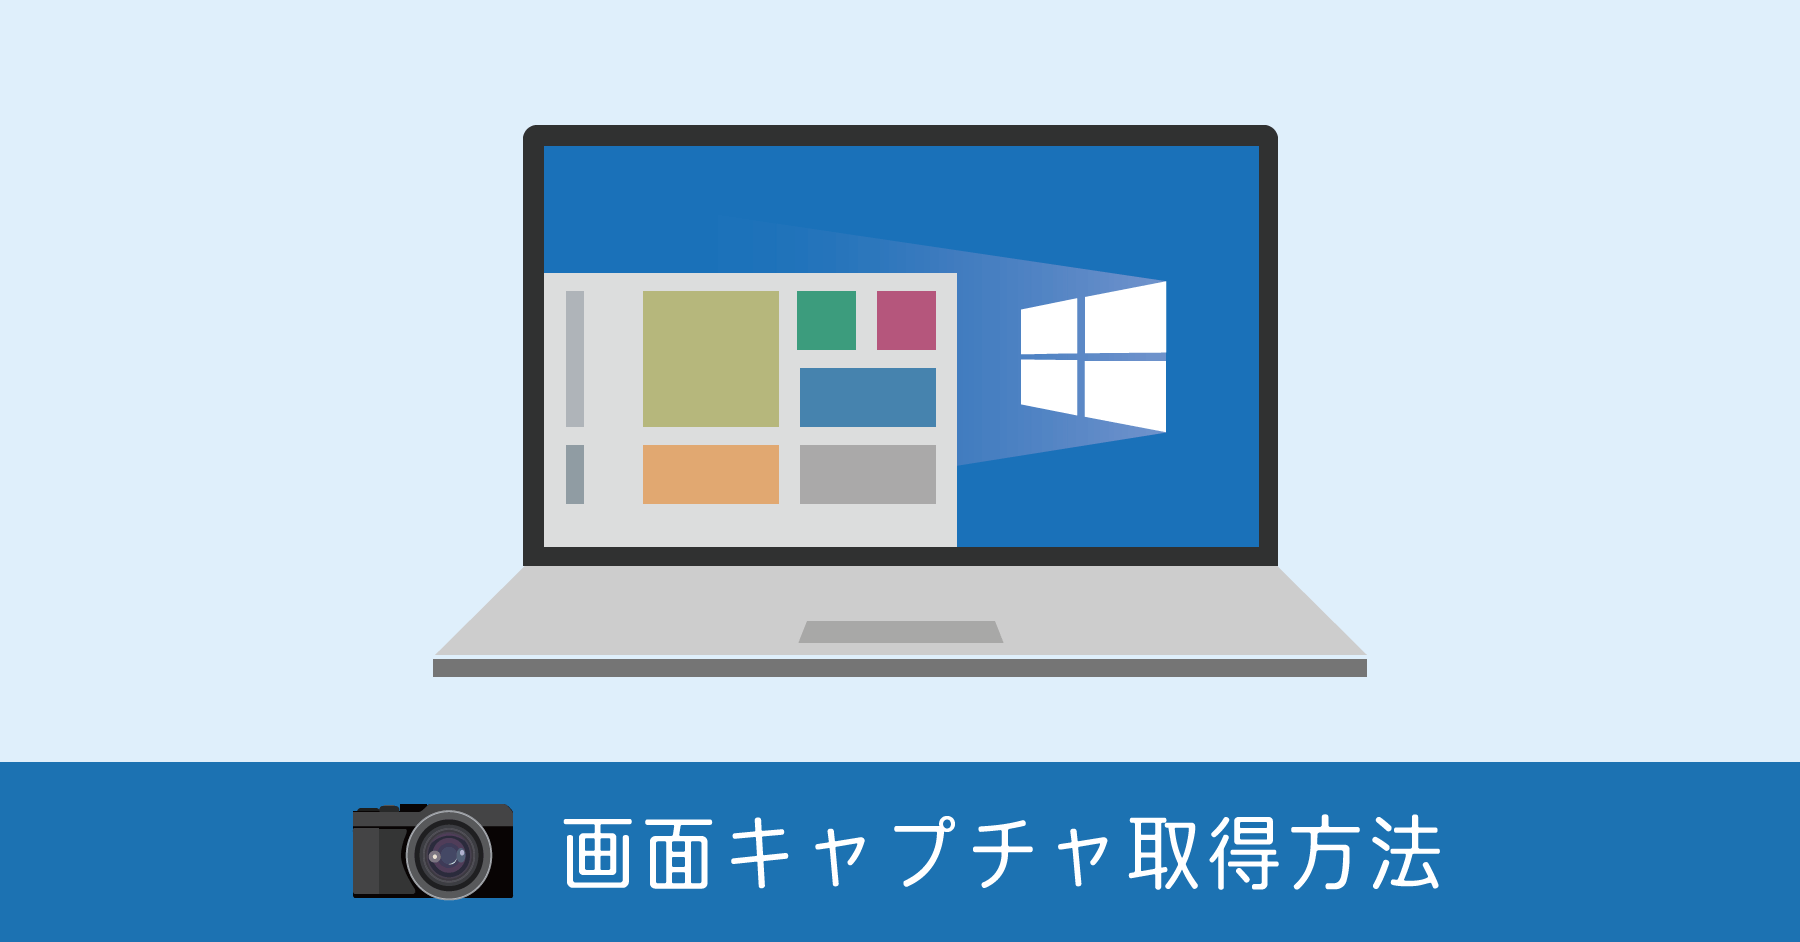 Windows 10 スクリーンショットの方法。範囲指定によるキャプチャも可能になった！